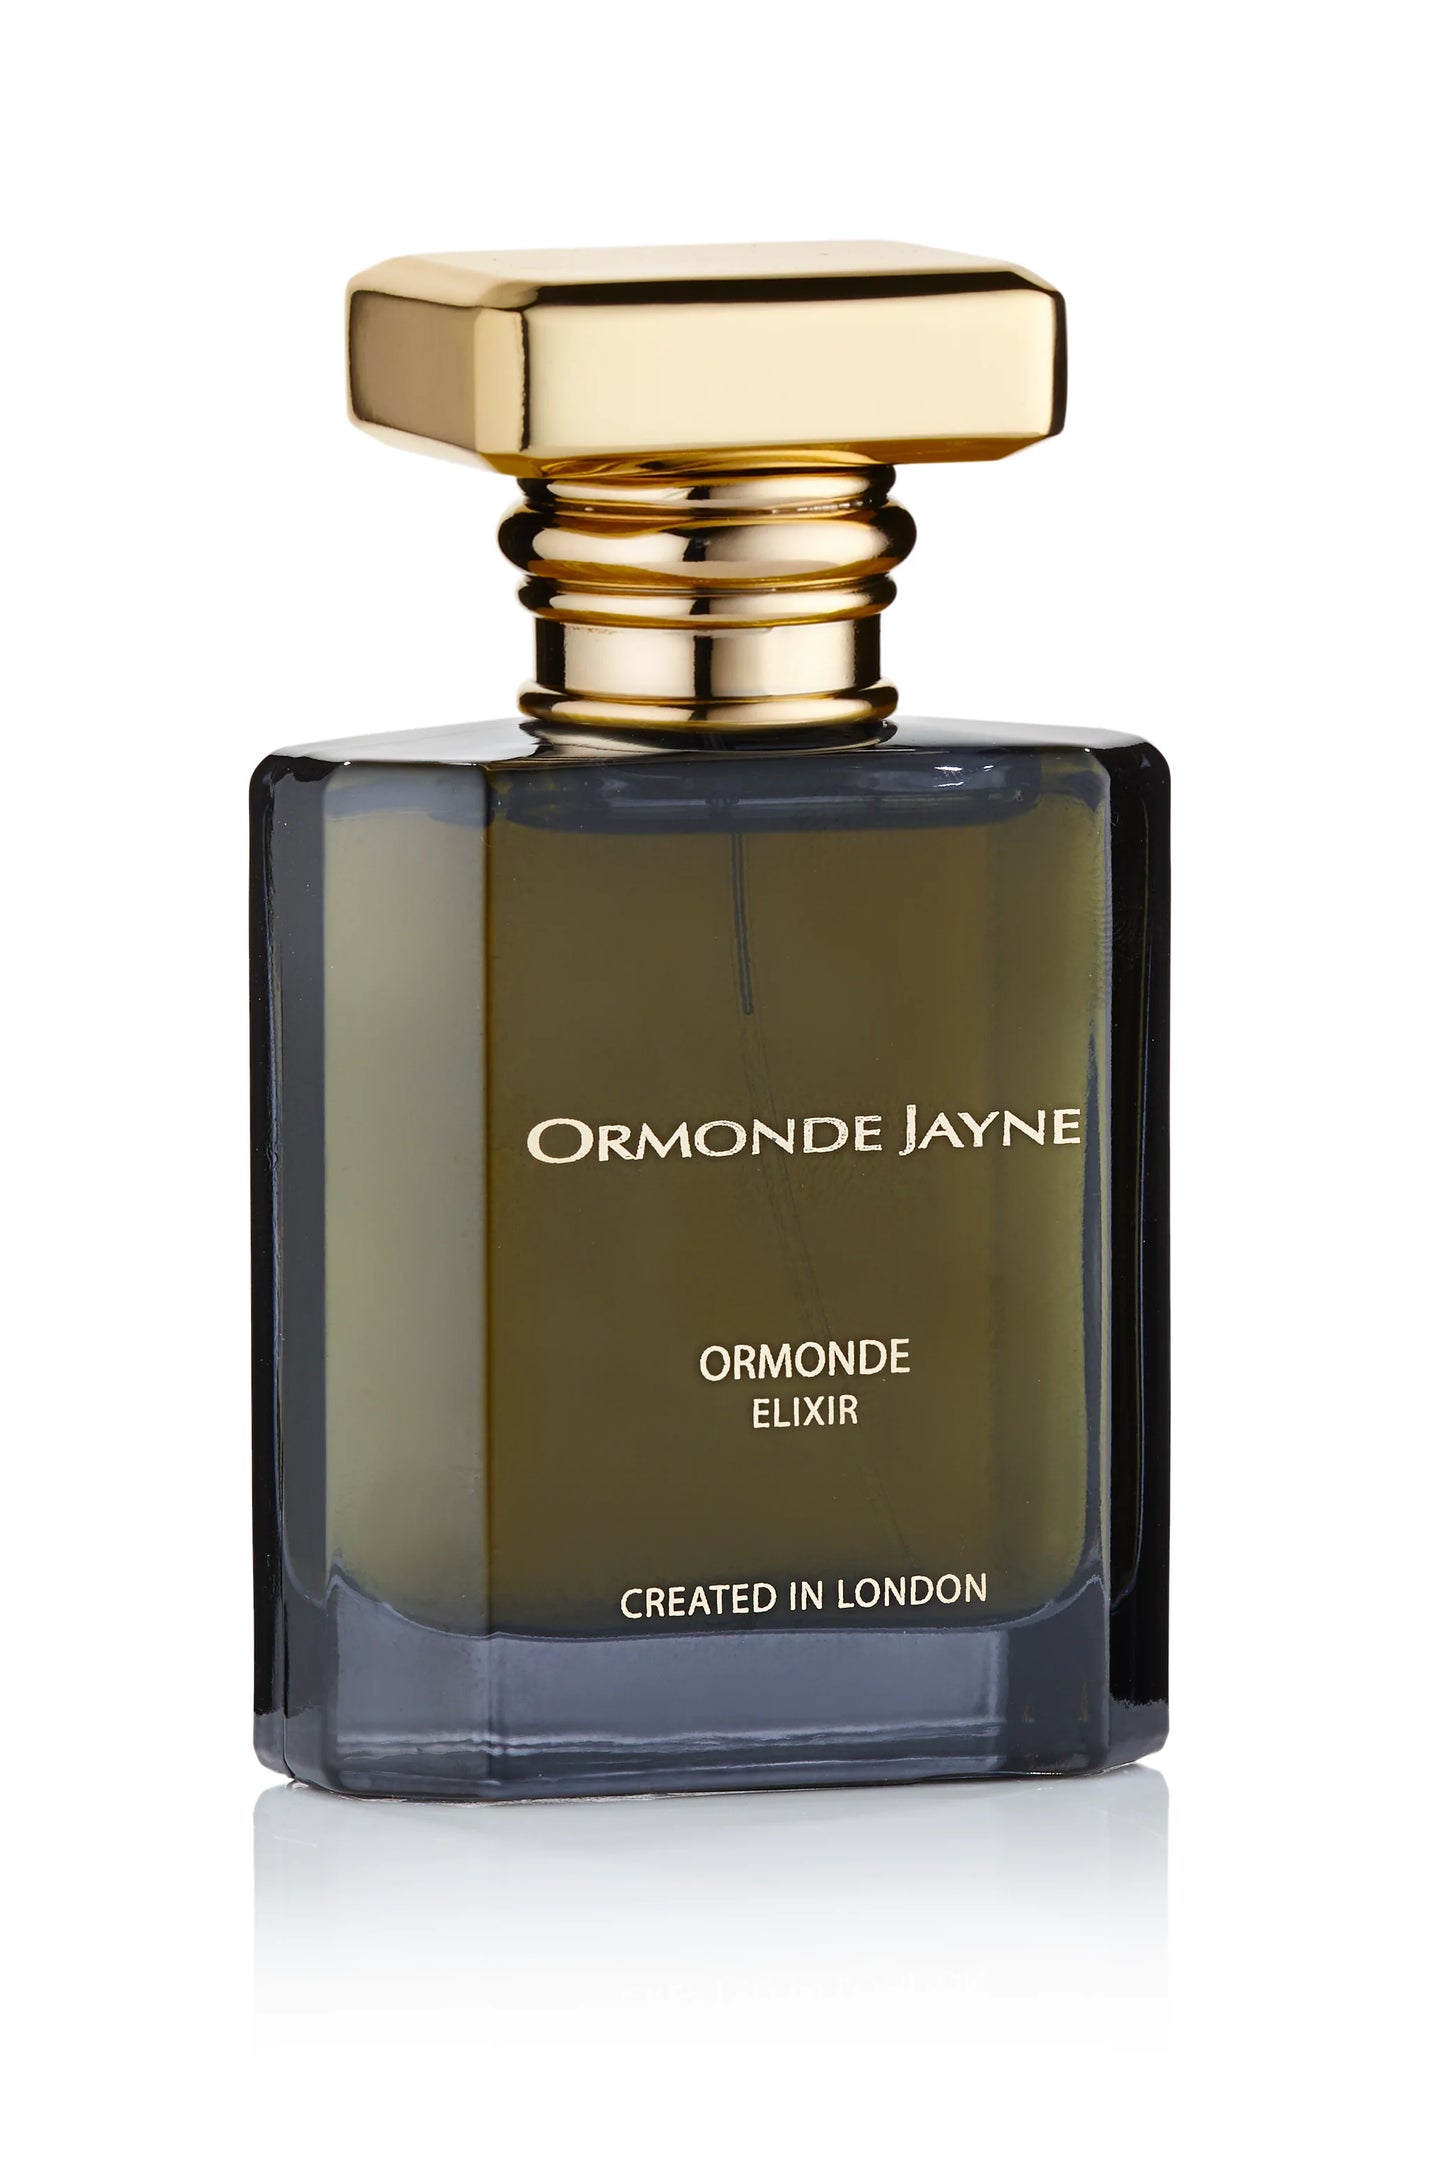 Ormonde Jayne Ormonde Elixir 2ml 0.06 fl. oz officiellt doftprov